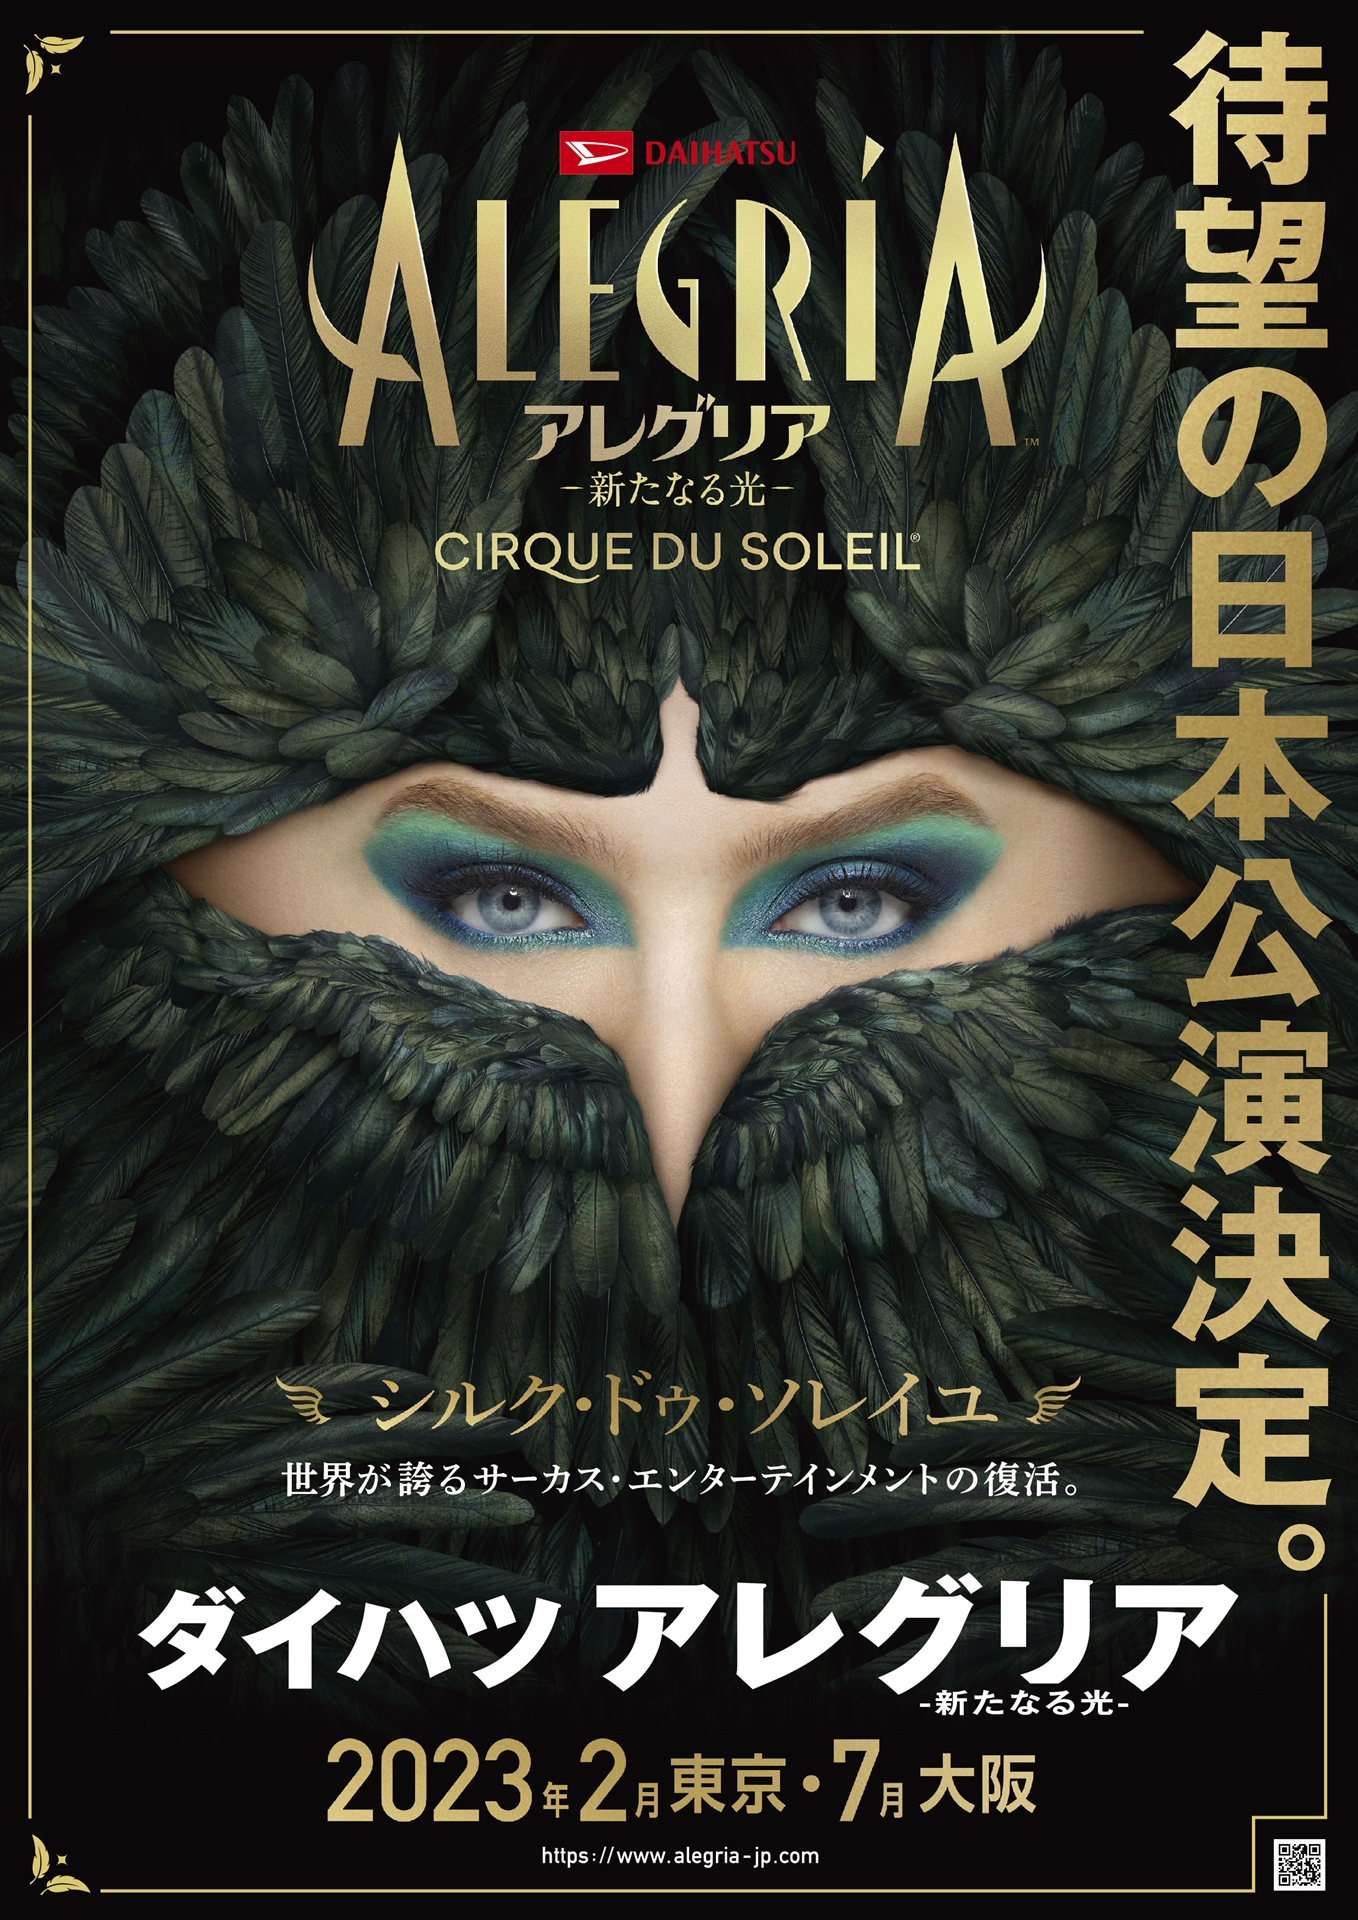 シルク・ドゥ・ソレイユの「アレグリア」、2023年2月より日本公演決定 